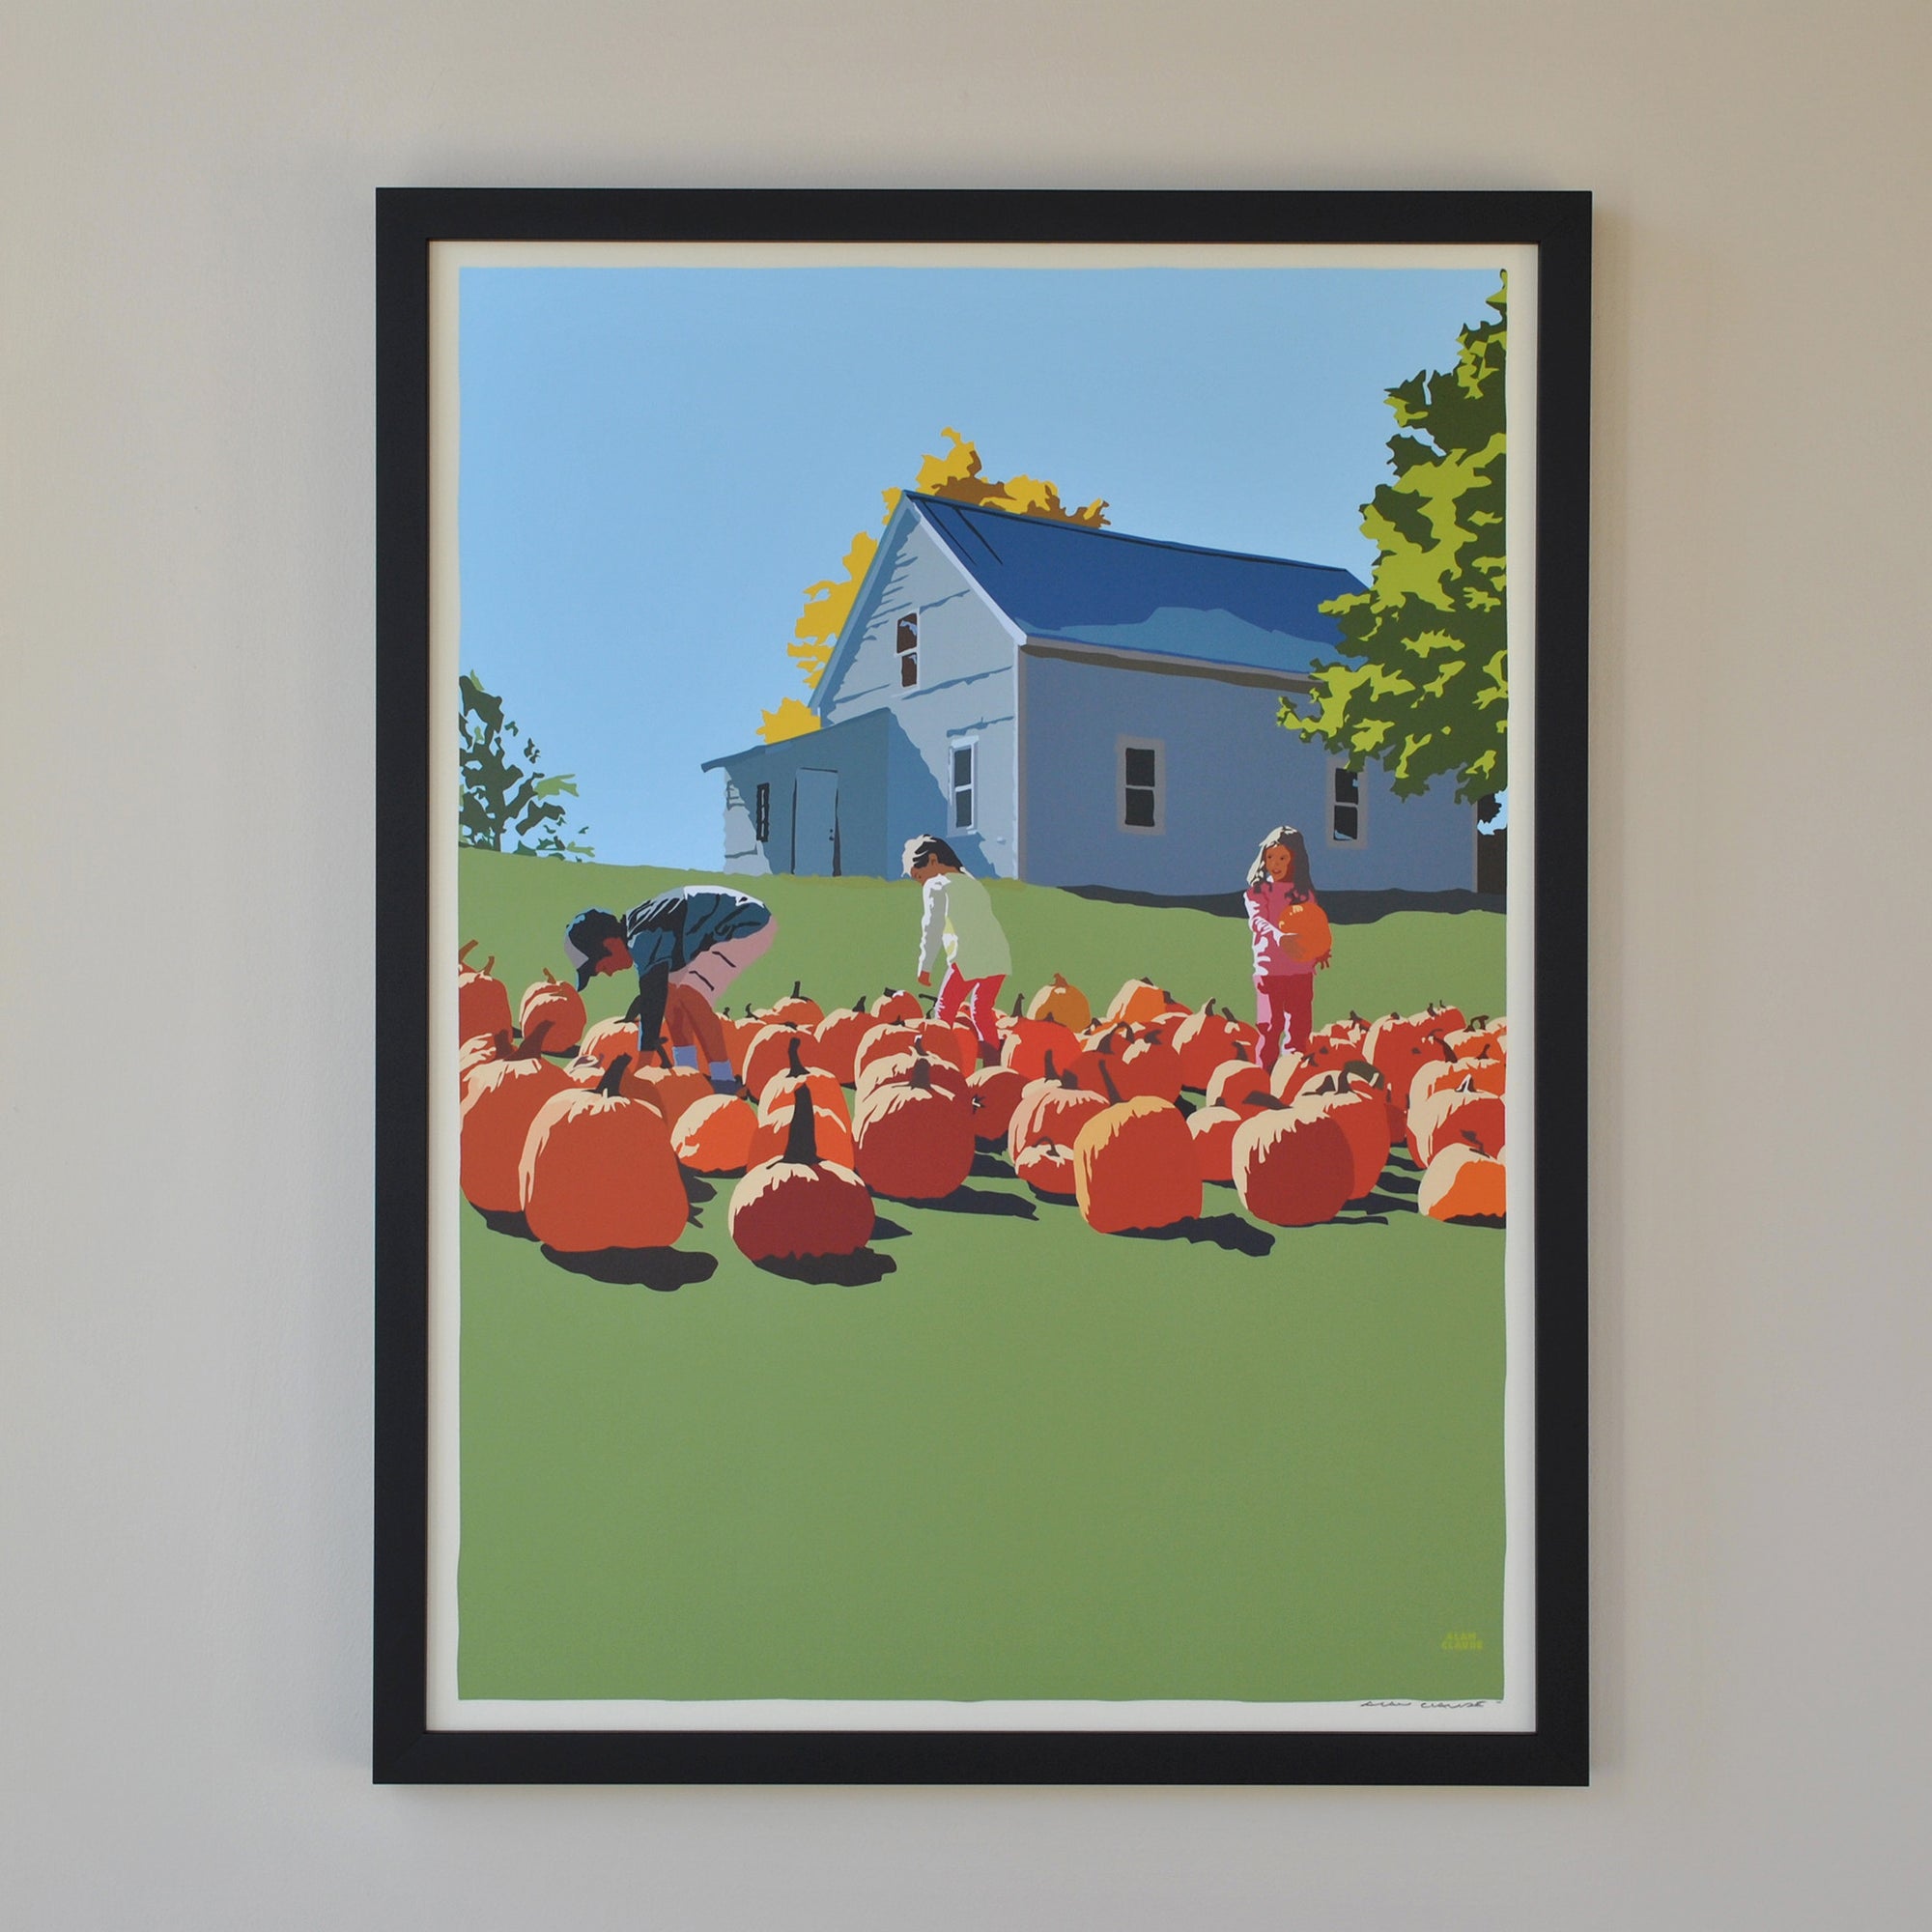 Fall Pumpkin Kids Art Print 18" x 24" Framed Wall Poster By Alan Claude - Maine